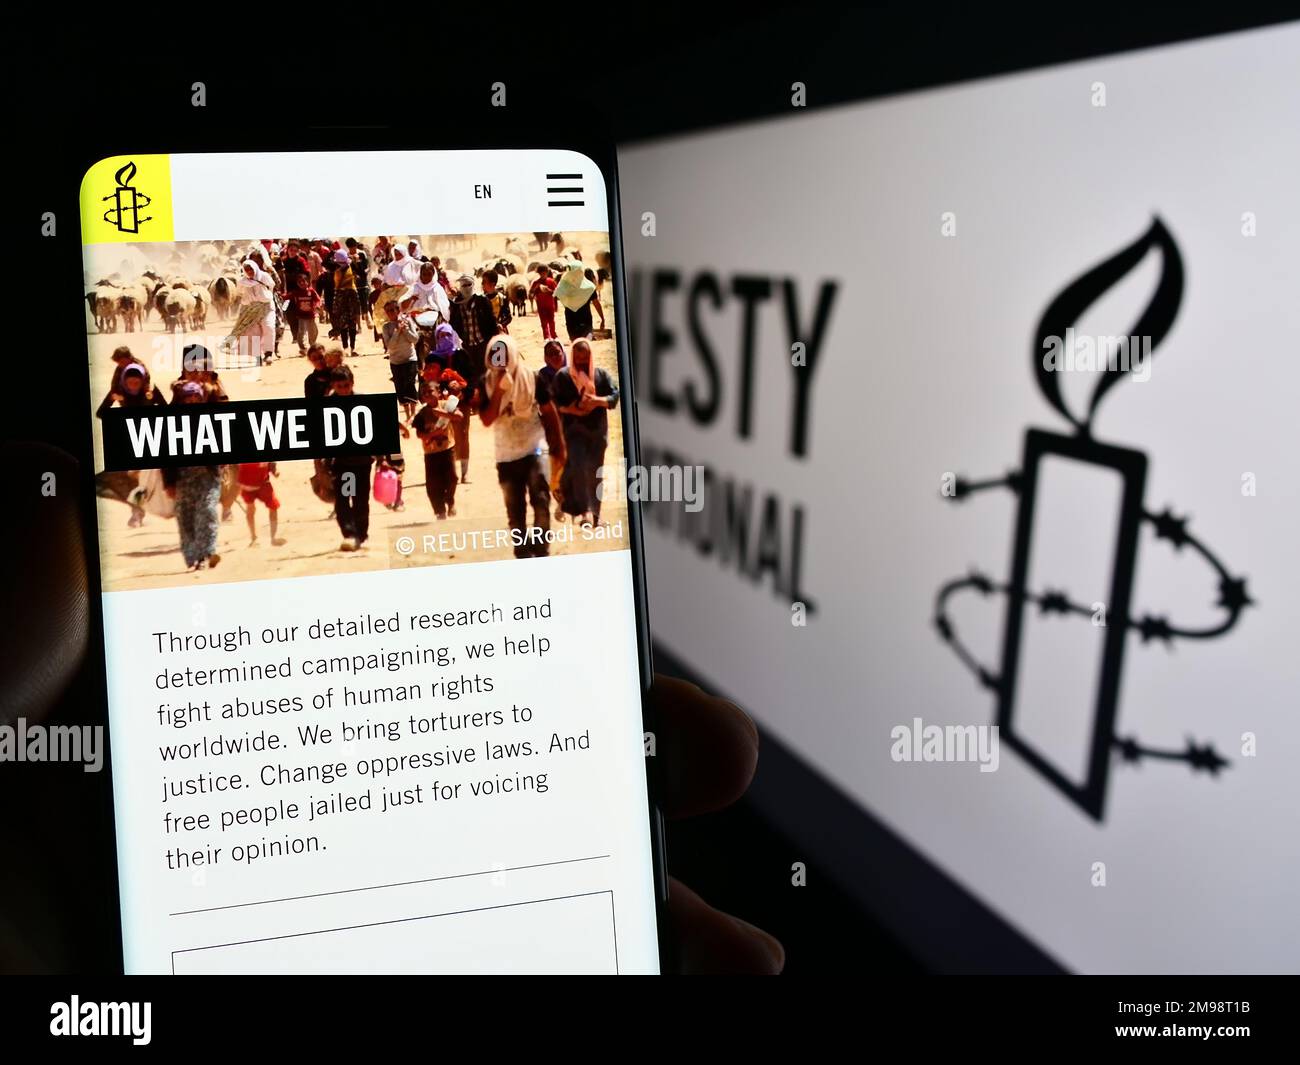 Personne tenant un téléphone portable avec une page web de l'organisation des droits de l'homme Amnesty International à l'écran avec logo. Concentrez-vous sur le centre de l'écran du téléphone. Banque D'Images